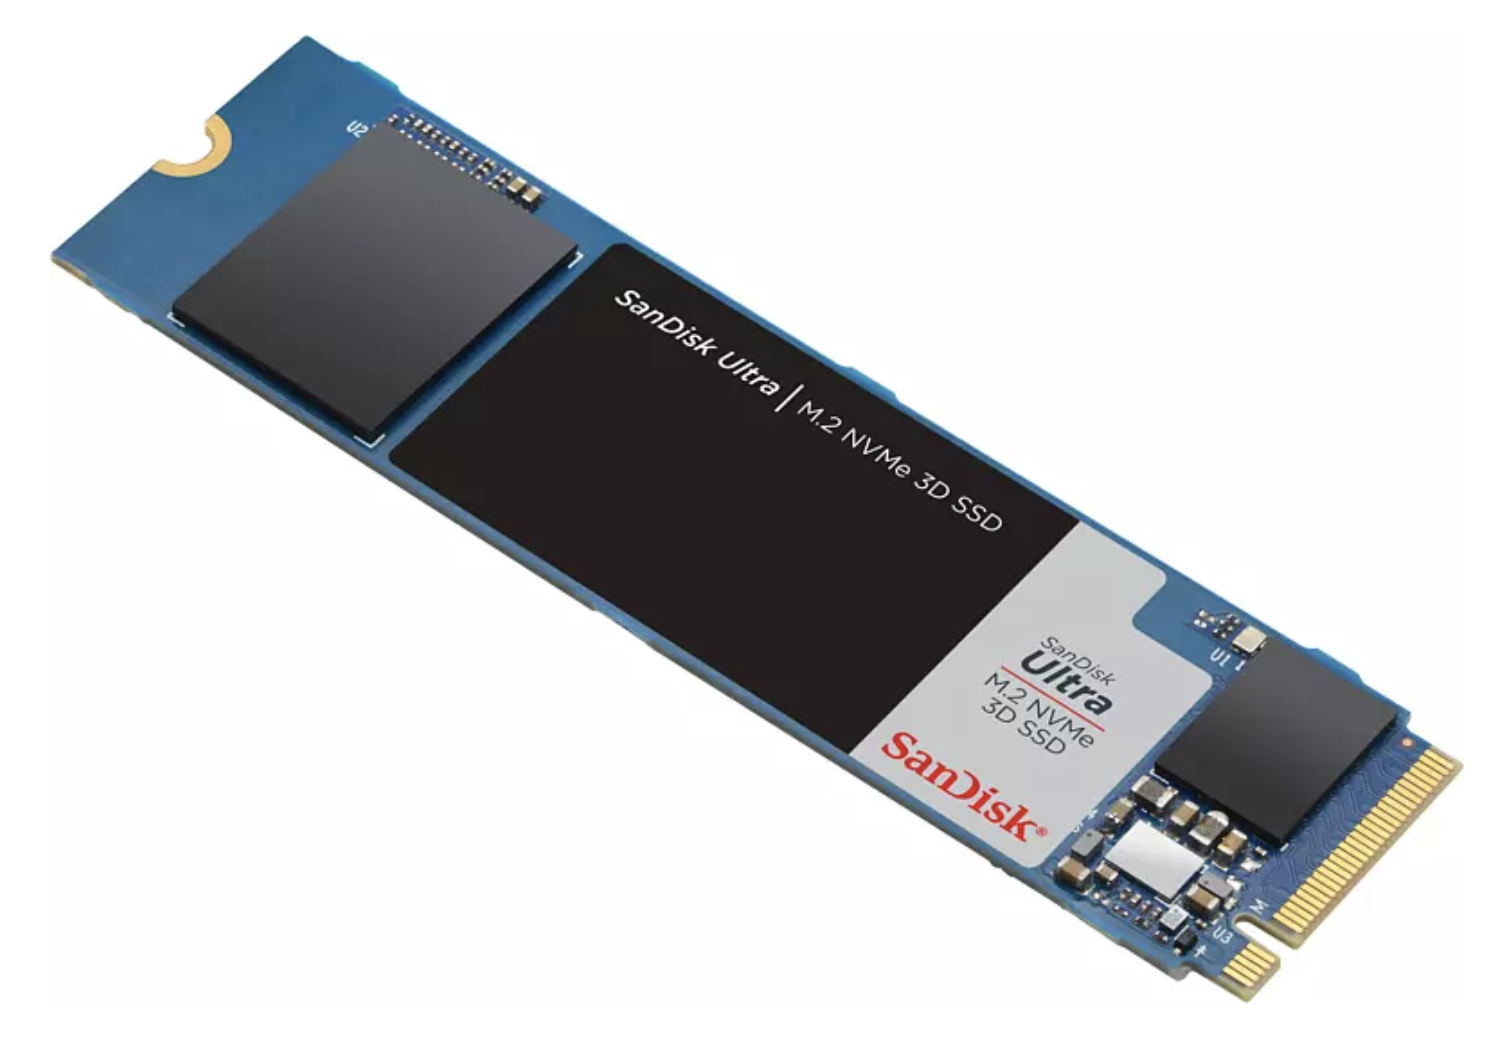 SANDISK Ultra 3D 500 GB Interne M.2 SSD für nur 44€ inkl. Versand